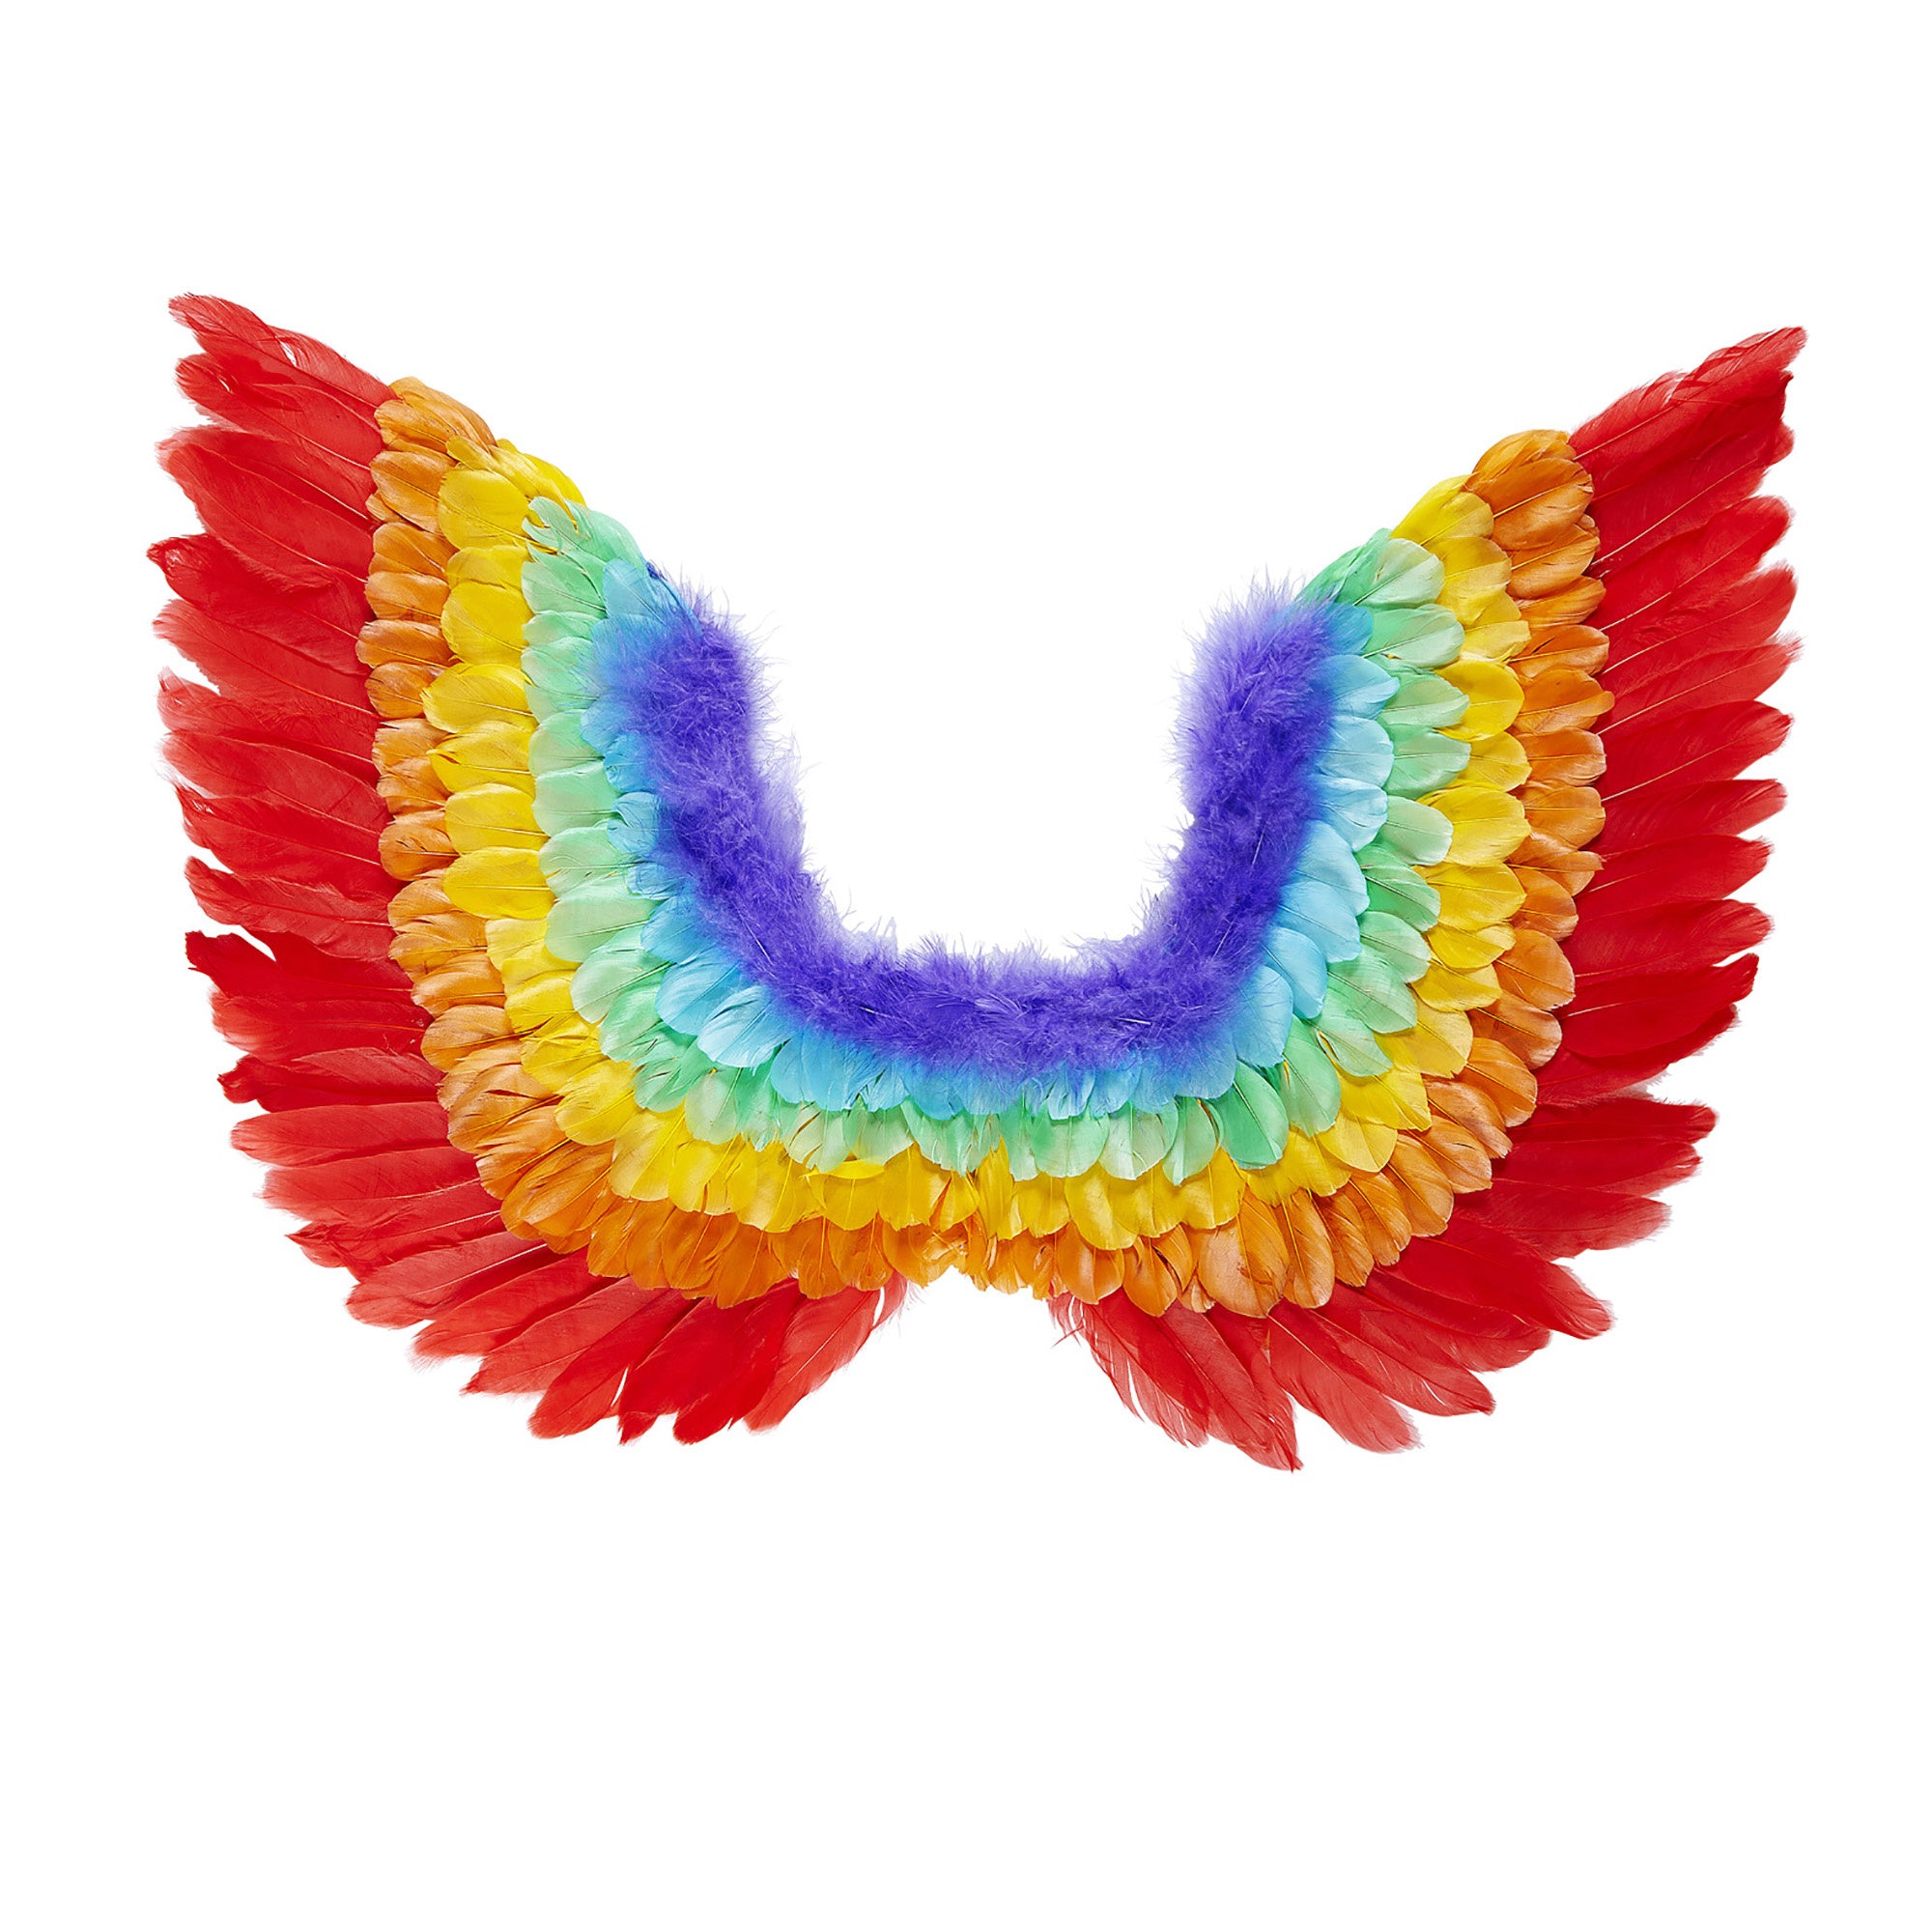 Widmann -Drag Queen Veren Vleugels, Regenboog - multicolor - Carnavalskleding - Verkleedkleding